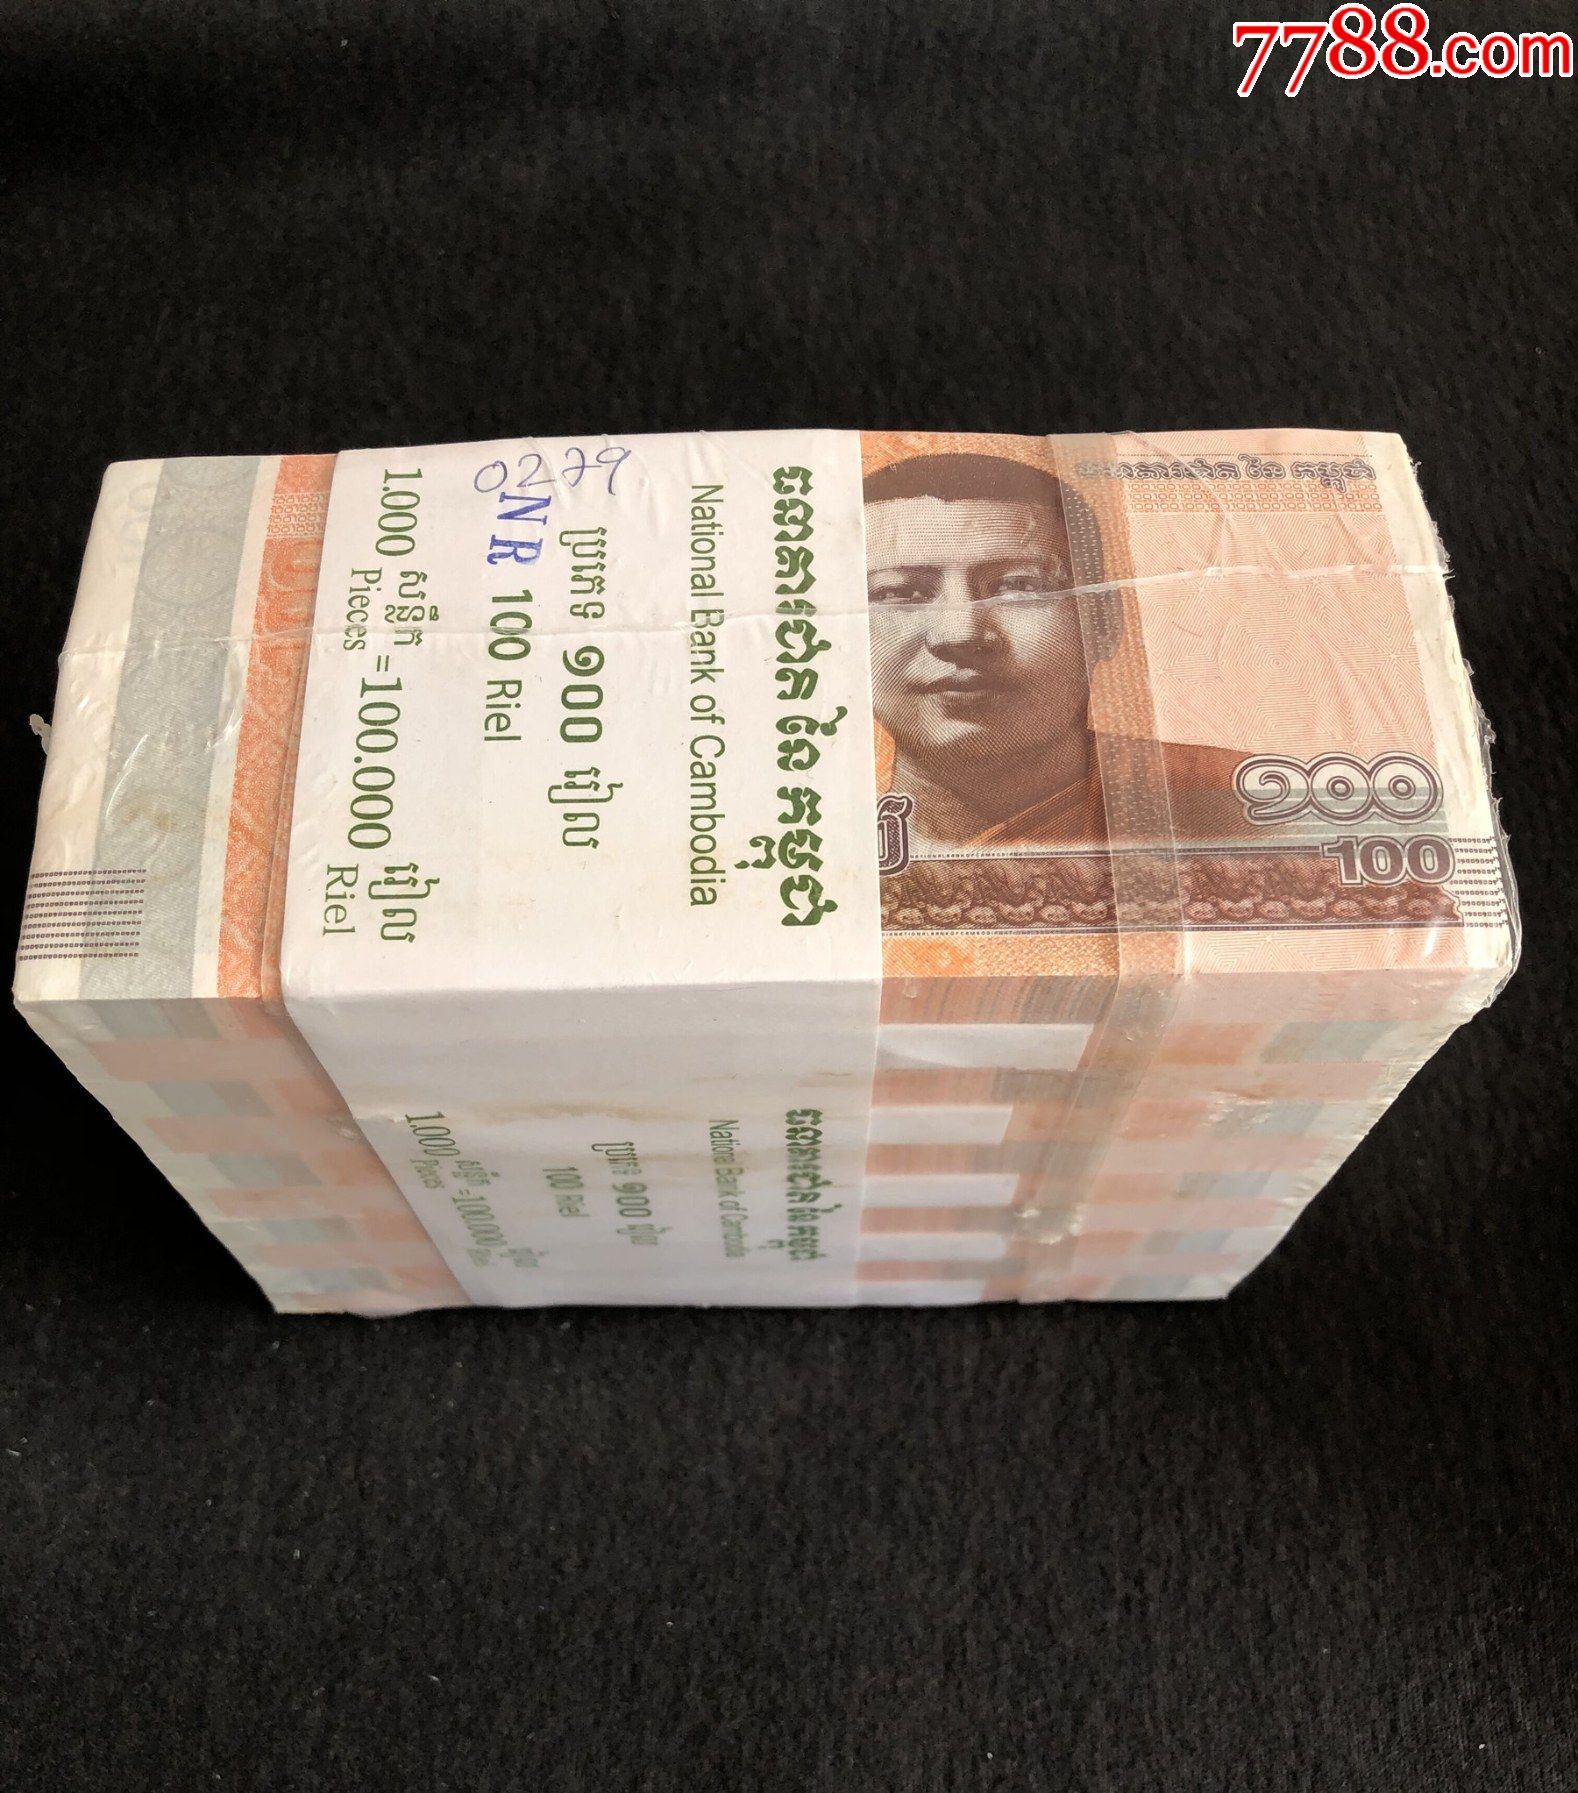 【亚洲】柬埔寨100瑞尔纸币整捆1000张2014年版